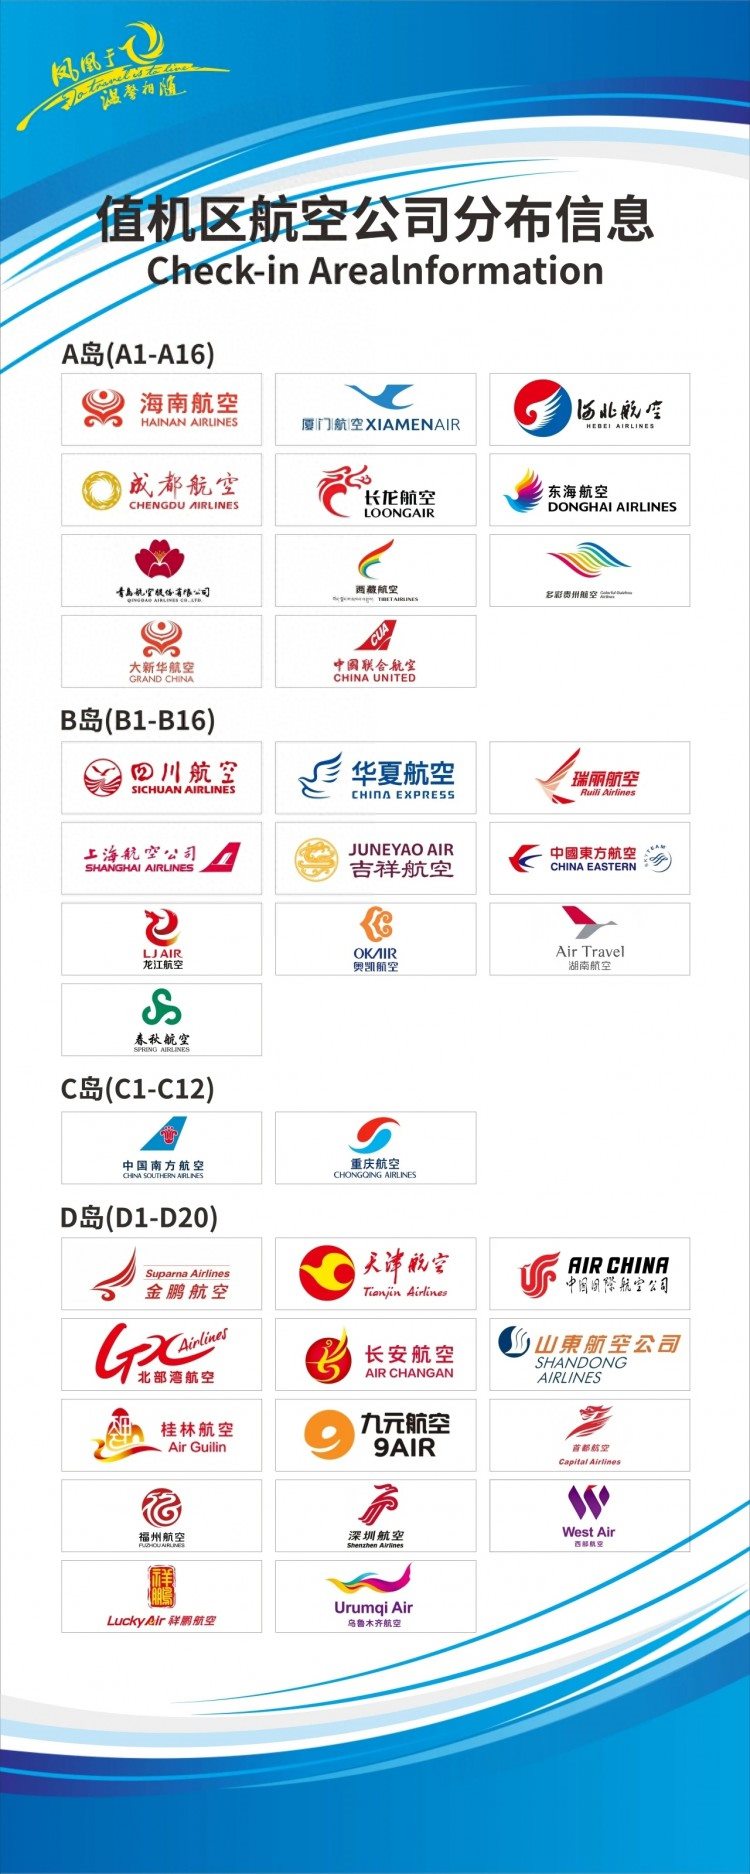 9月28日起 三亚机场各航空公司值机区域调整